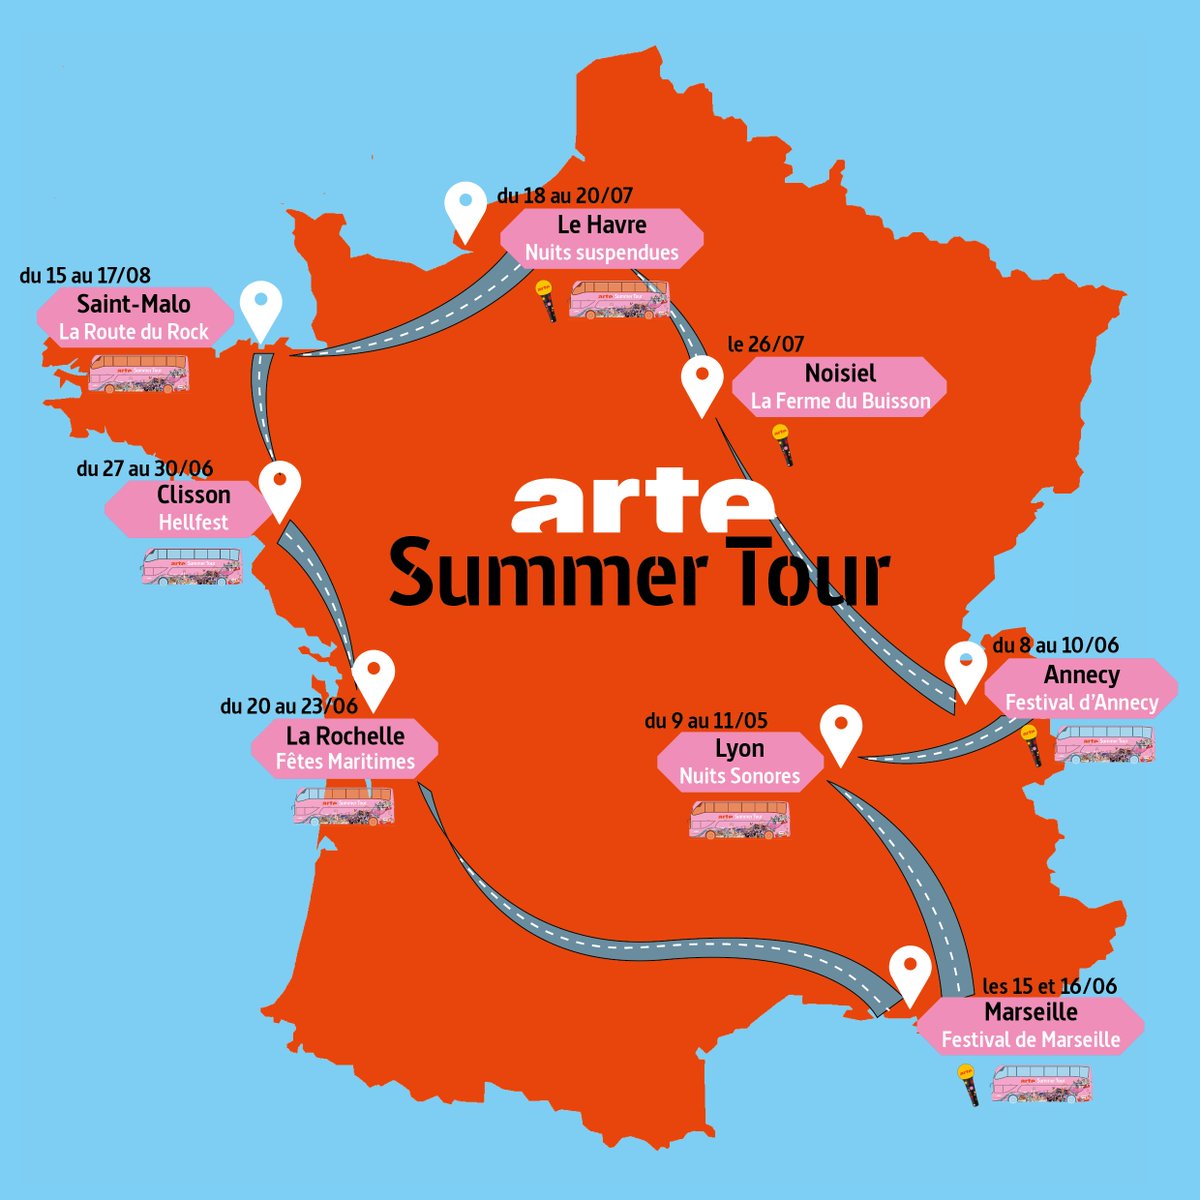 ARTE Summer Tour débarque à Nuits Sonores🚌✨ Profitez de nos activités sur le bus : karaoké géant, réalité virtuelle, jeux vidéo, quiz et plein de cadeaux à remporter ! 👋@Nuits_sonores